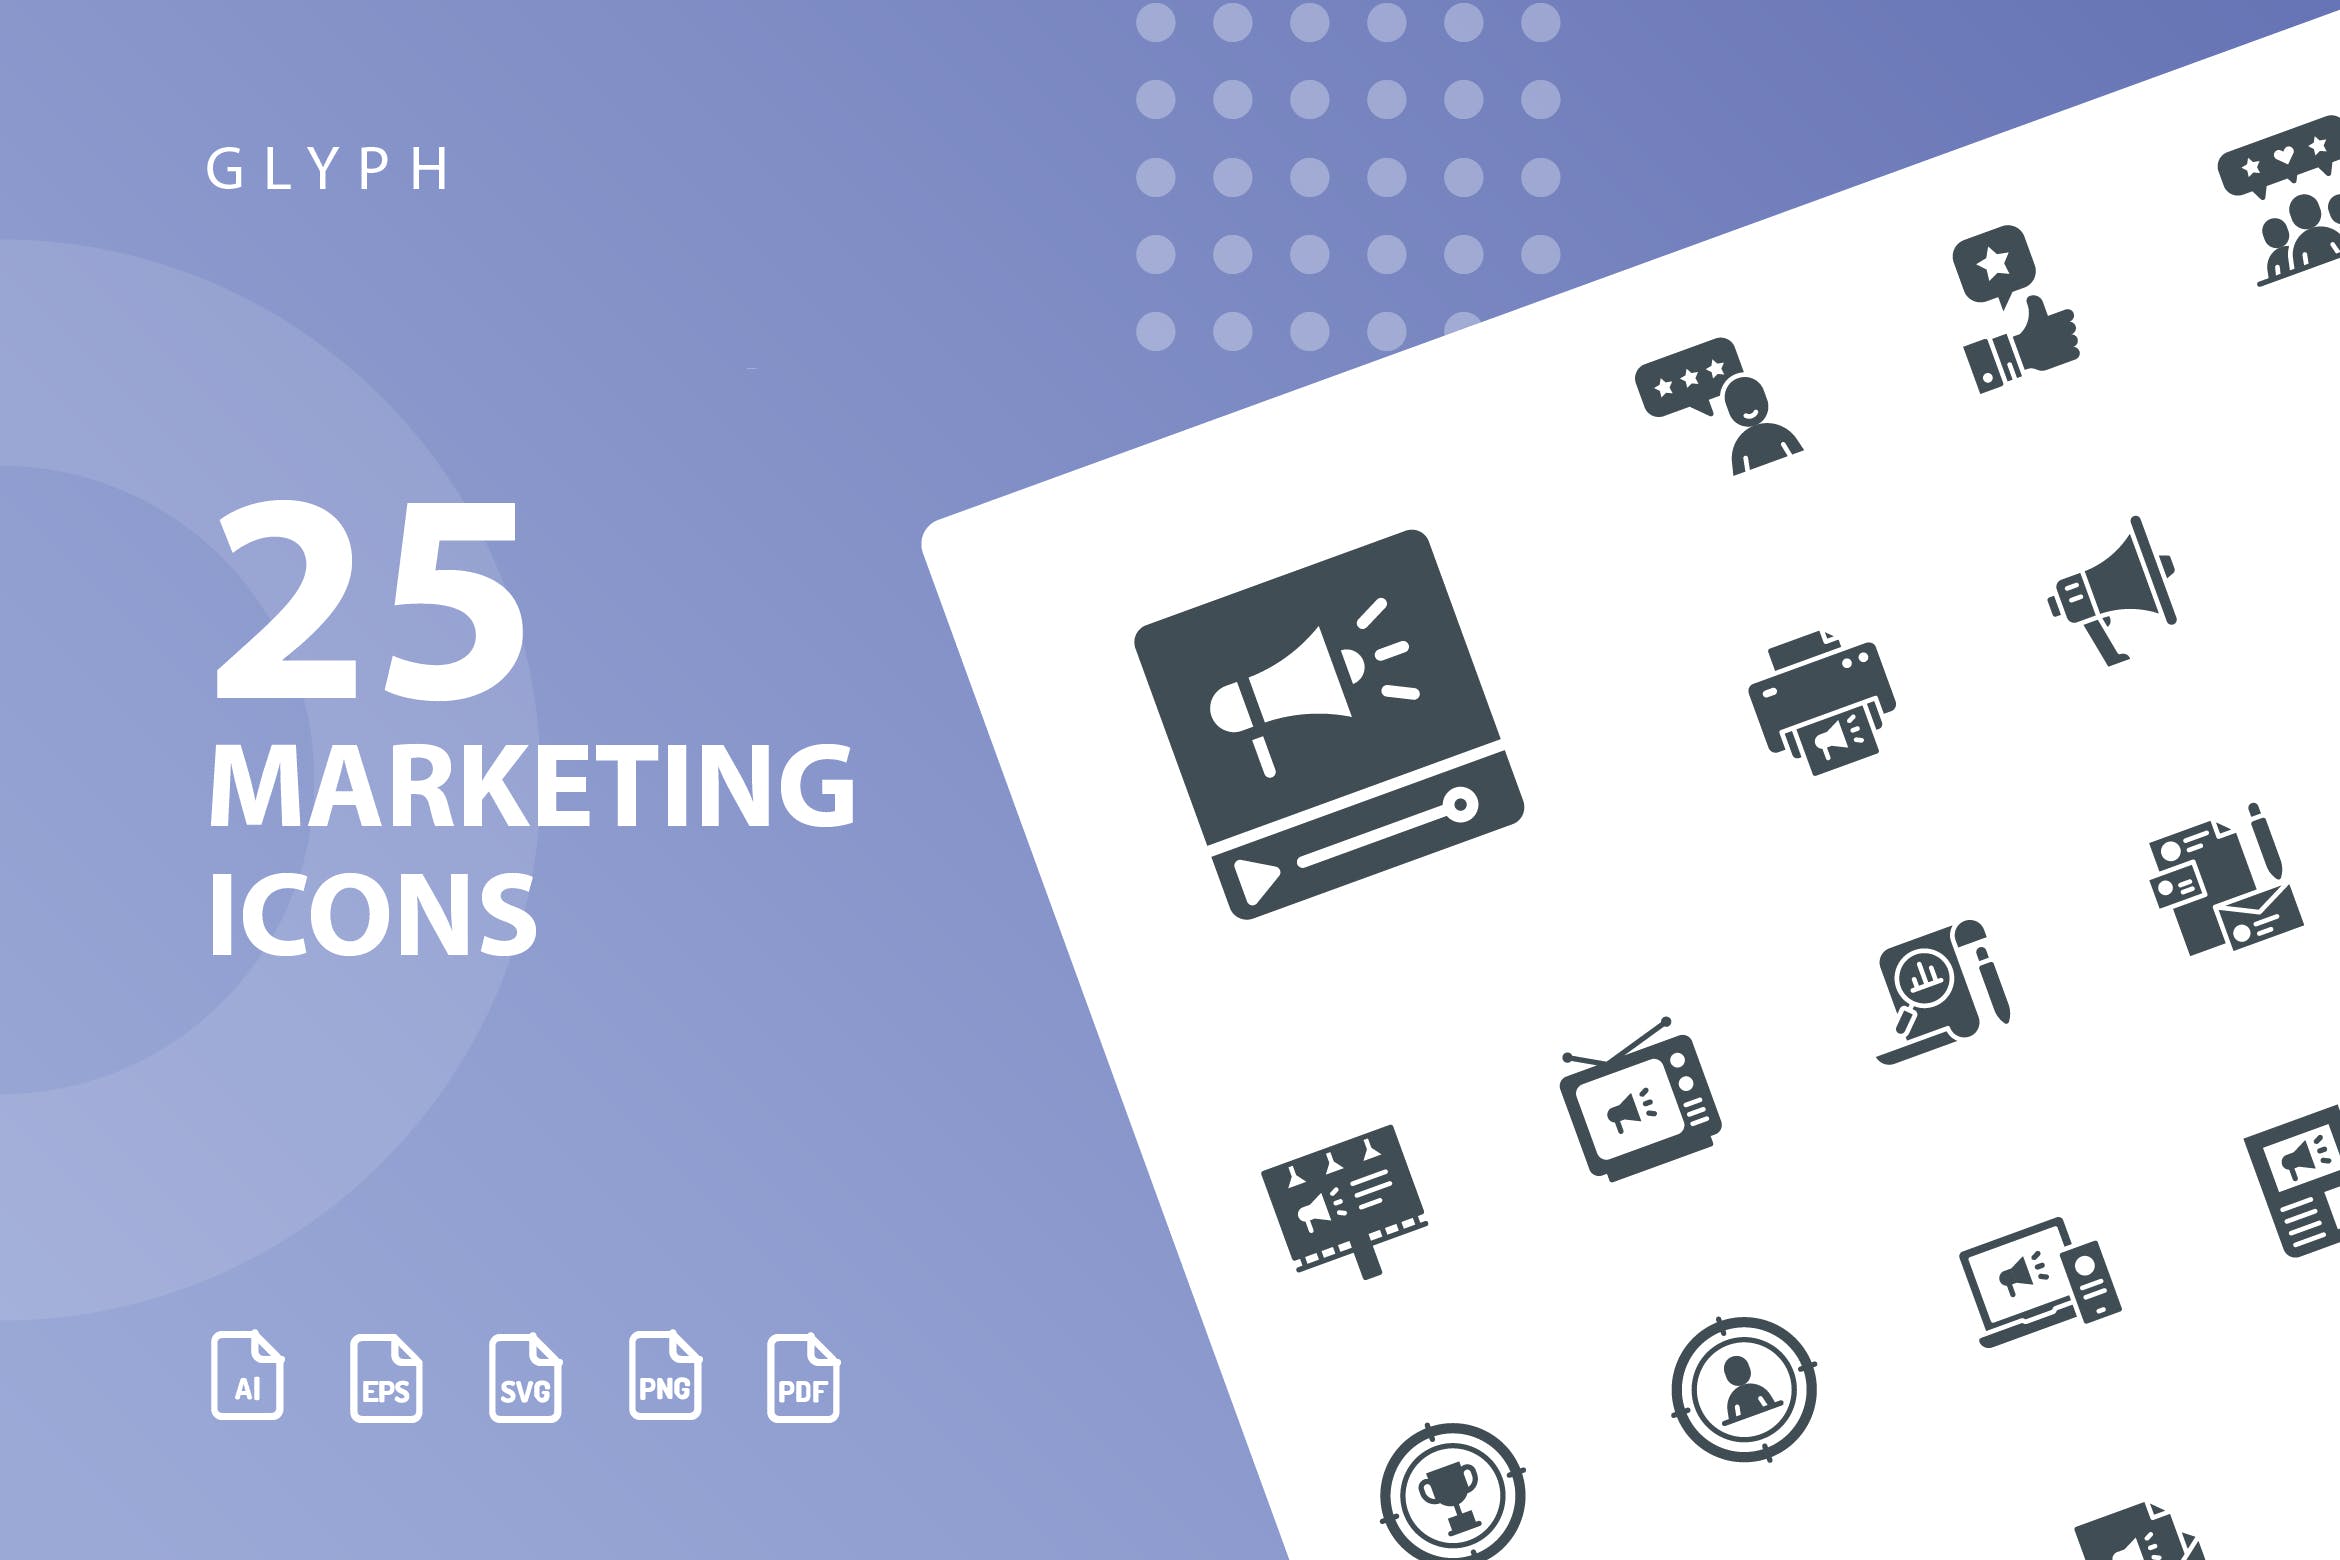 25枚市场营销主题符号素材库精选图标 Marketing Glyph Icons插图